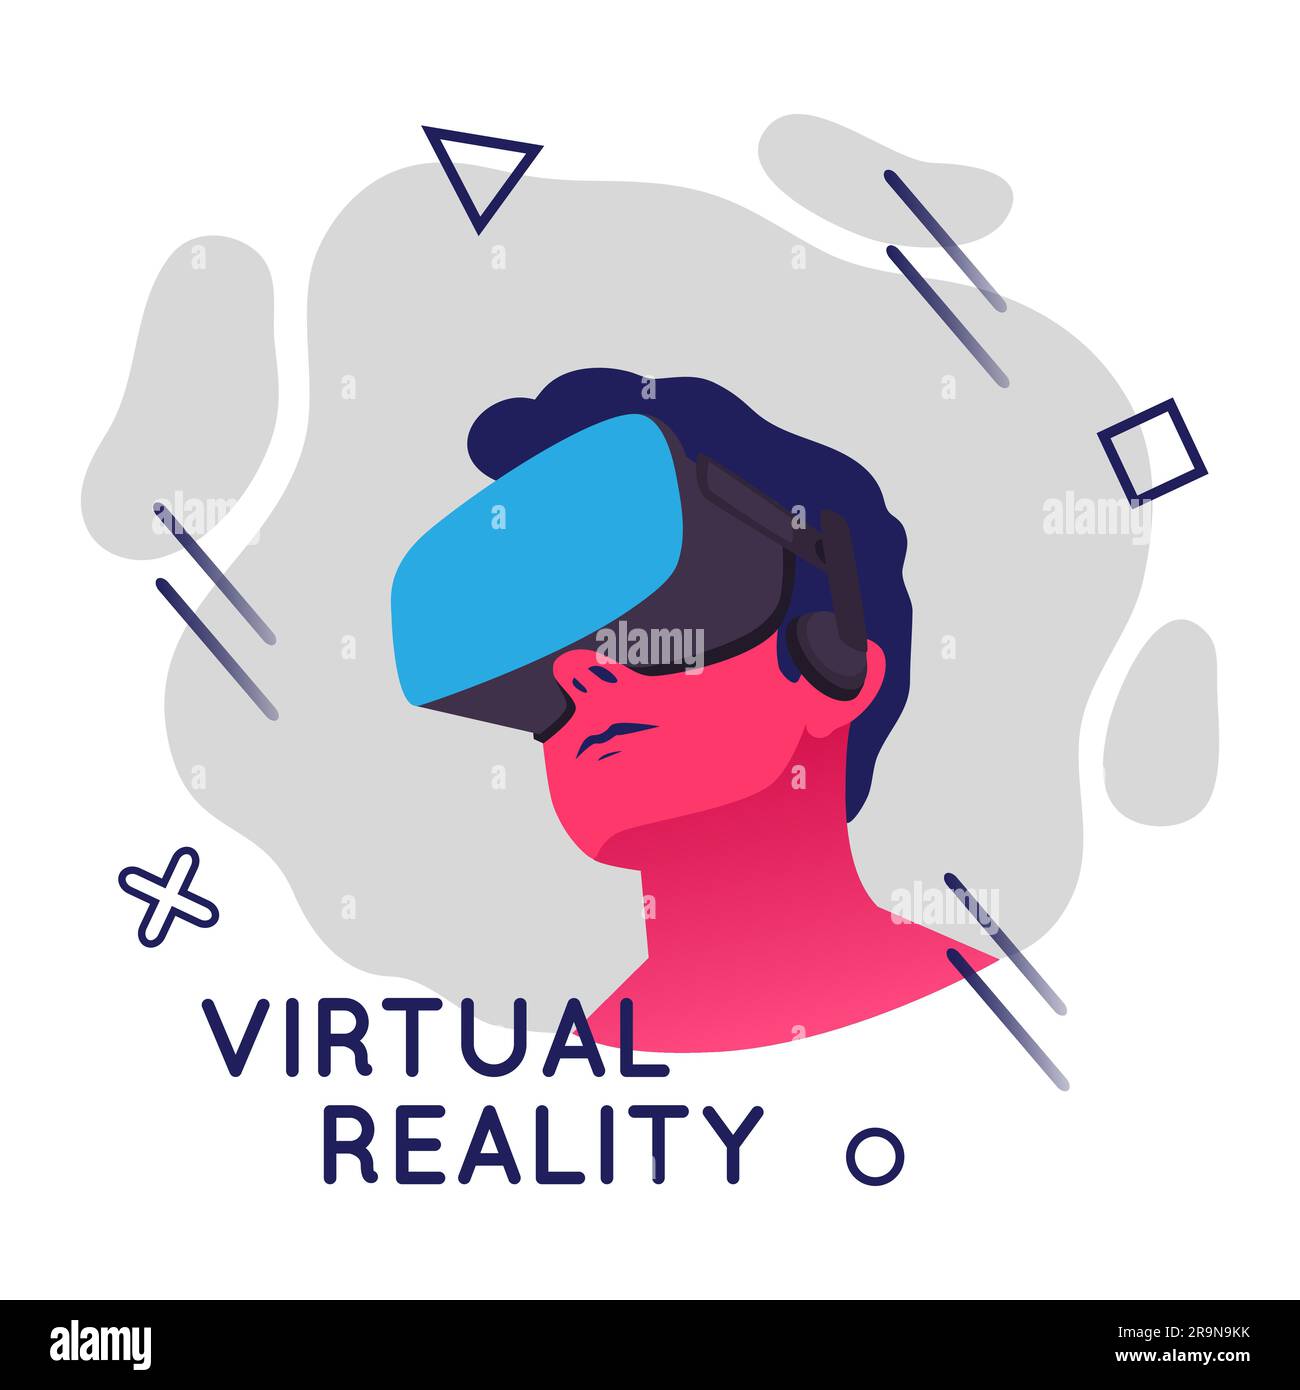 Illustration vectorielle d'un homme portant un casque de réalité virtuelle. Illustration VR moderne abstraite avec éléments géométriques de style plat Illustration de Vecteur